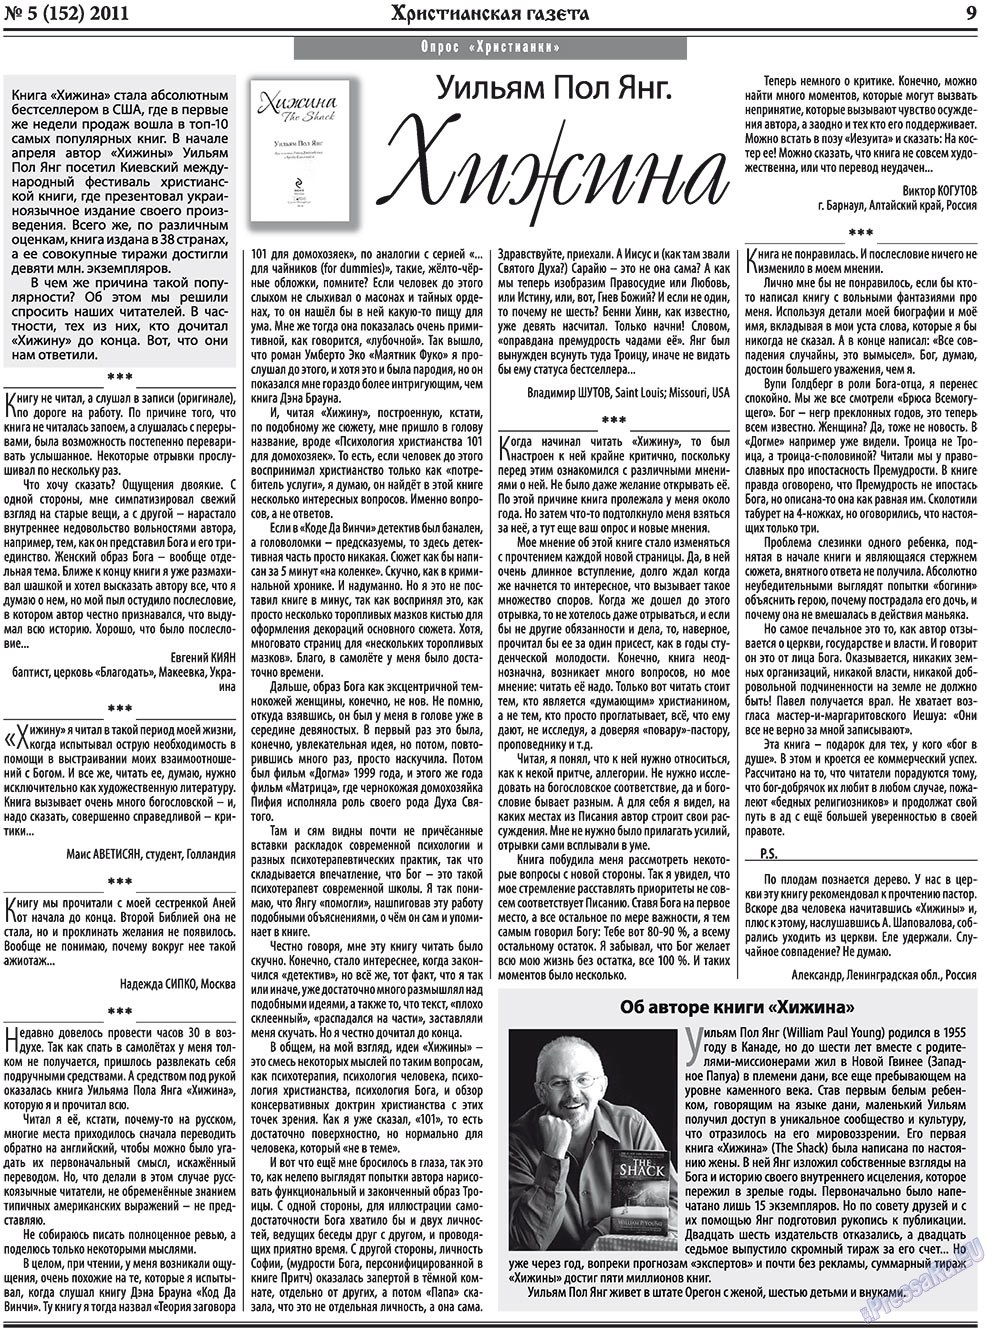 Христианская газета, газета. 2011 №5 стр.9